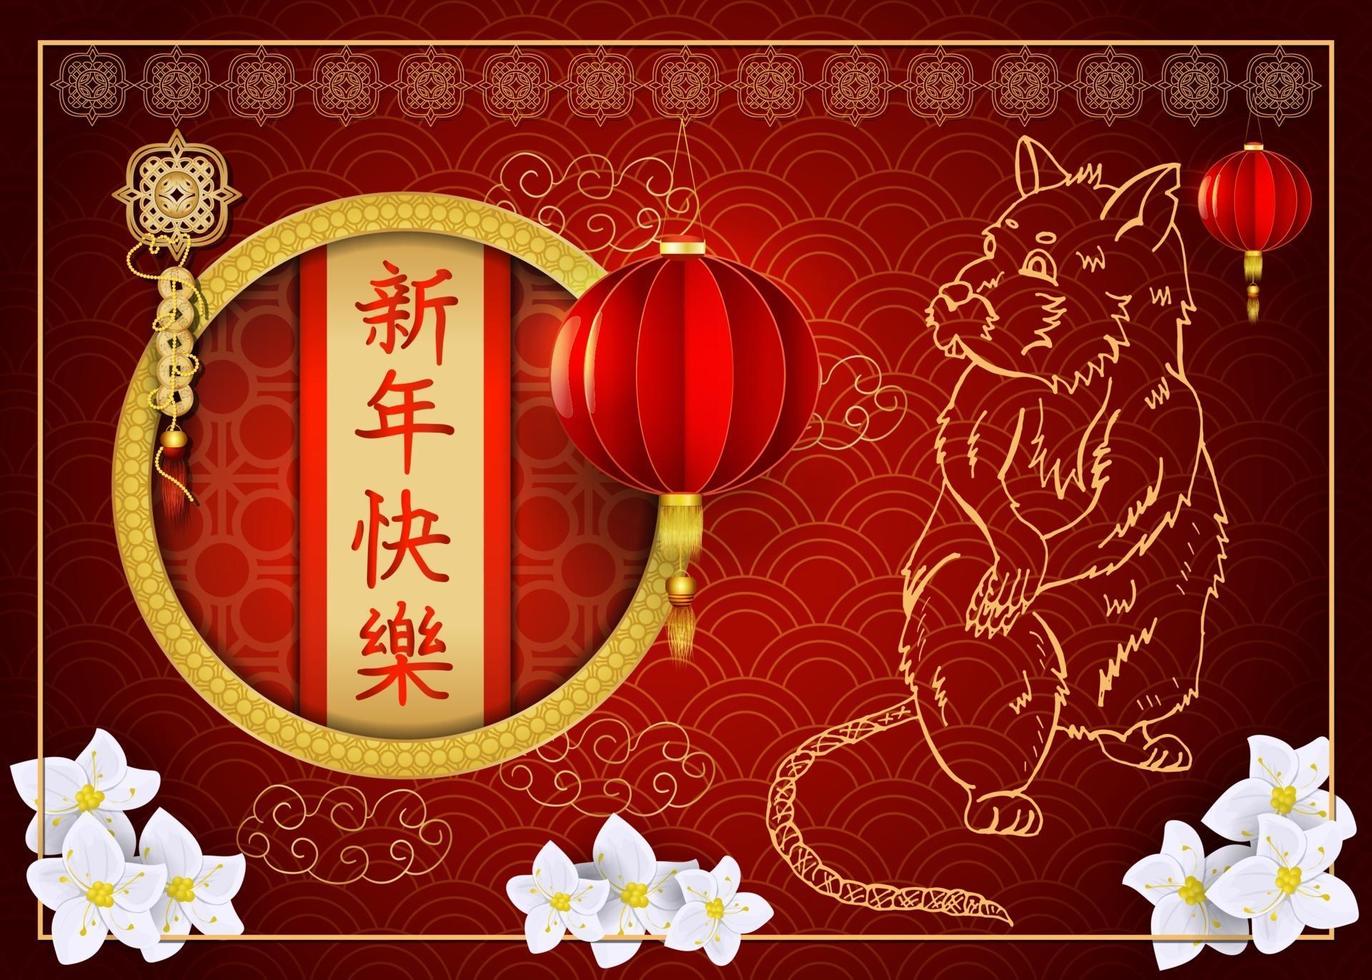 vermelho e dourado, ano novo chinês dois, design asiático vetor